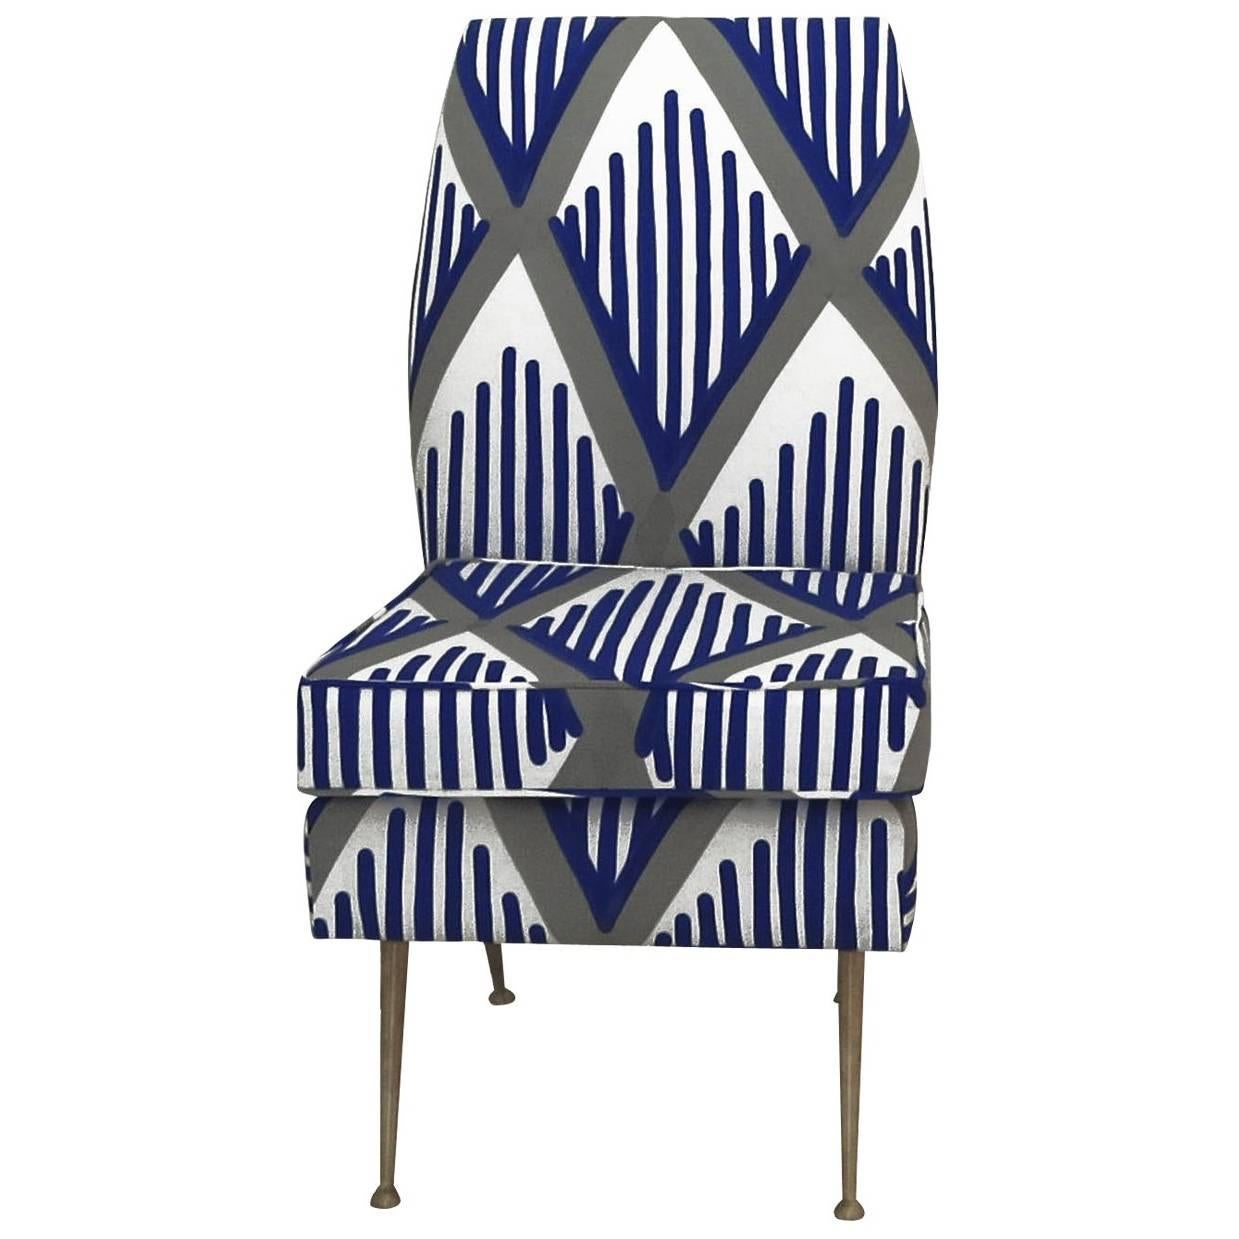 Pettine 1964 Chair